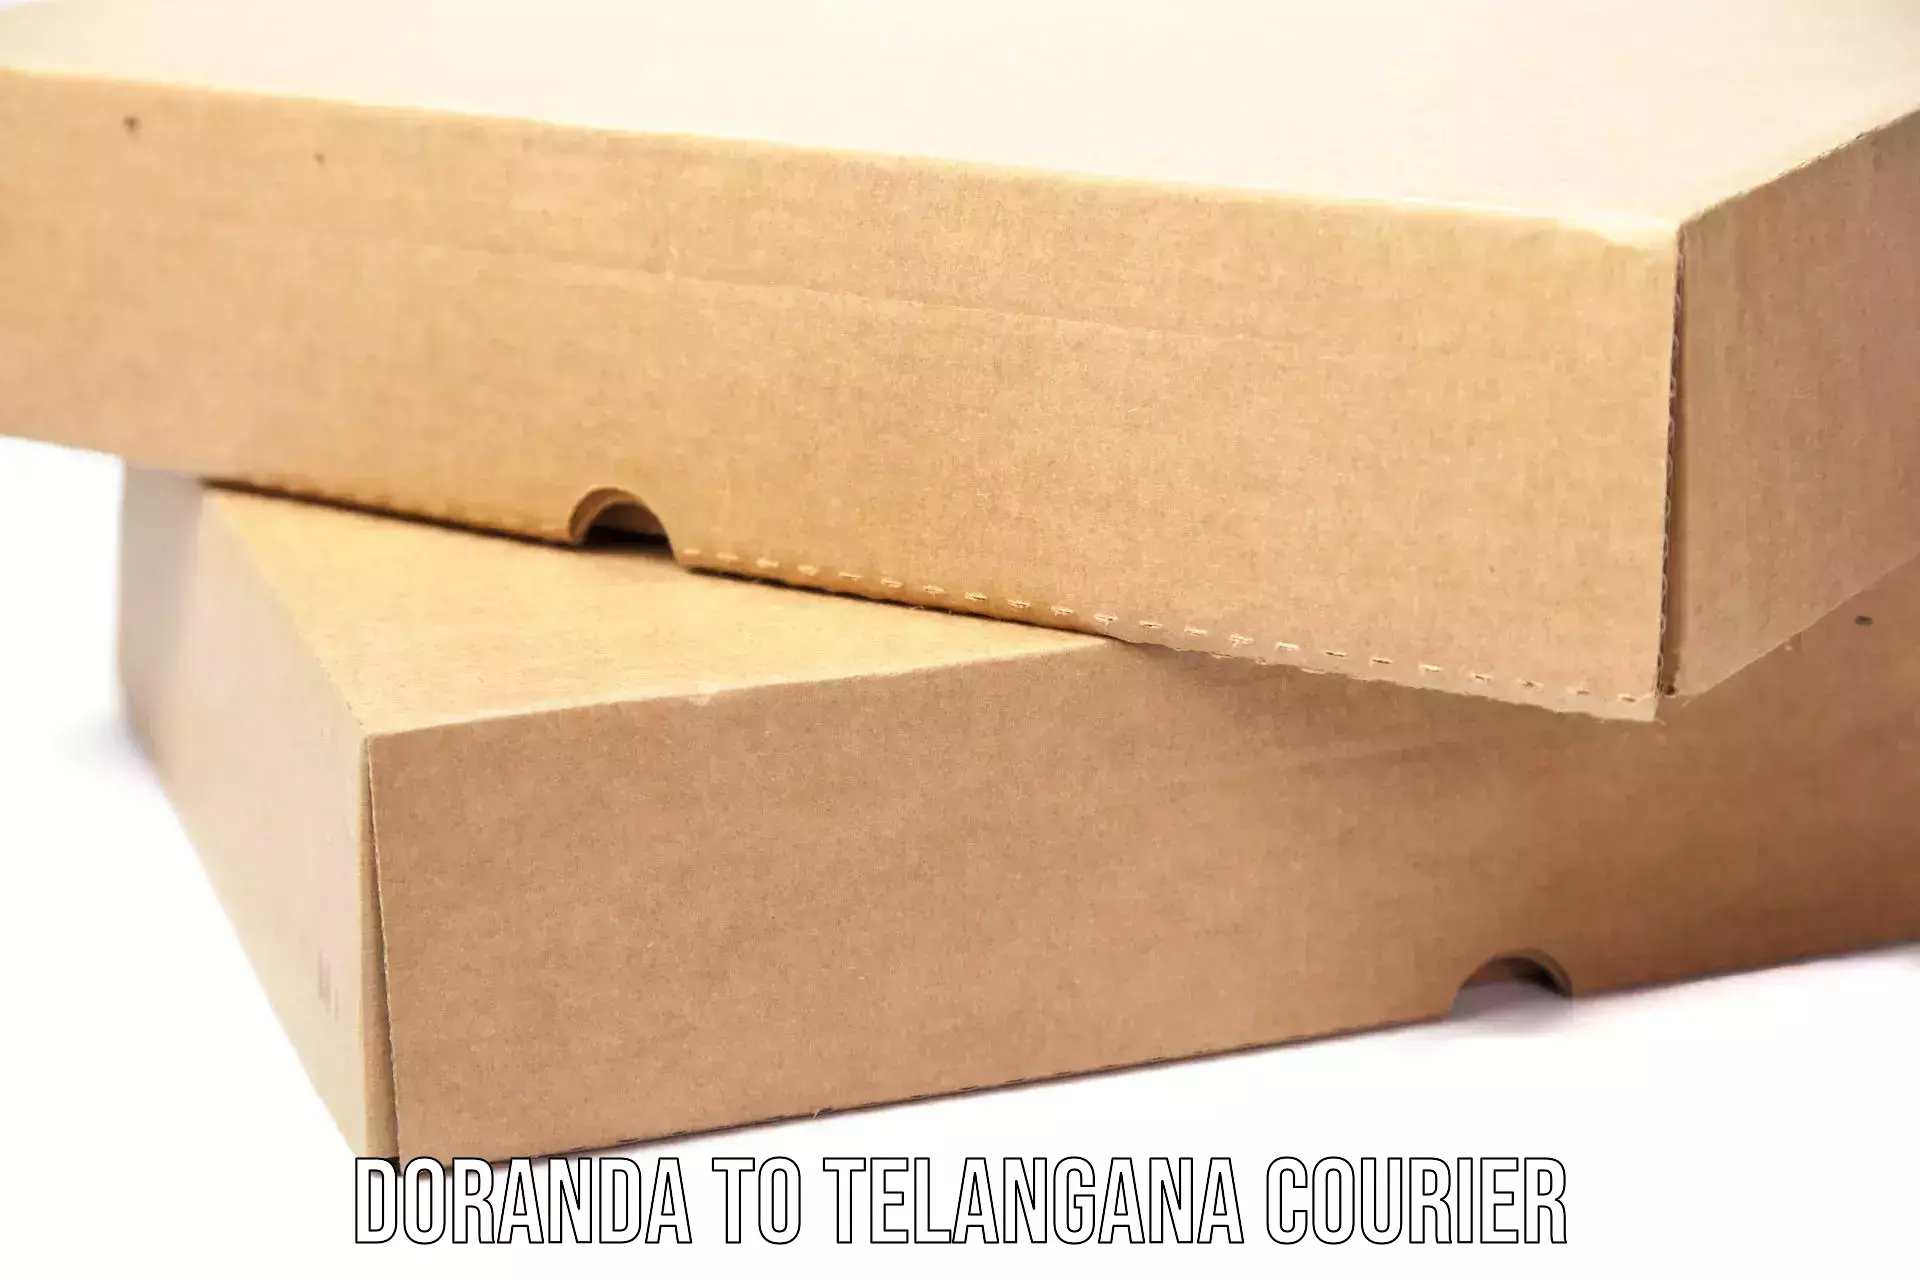 Heavy parcel delivery Doranda to Telangana